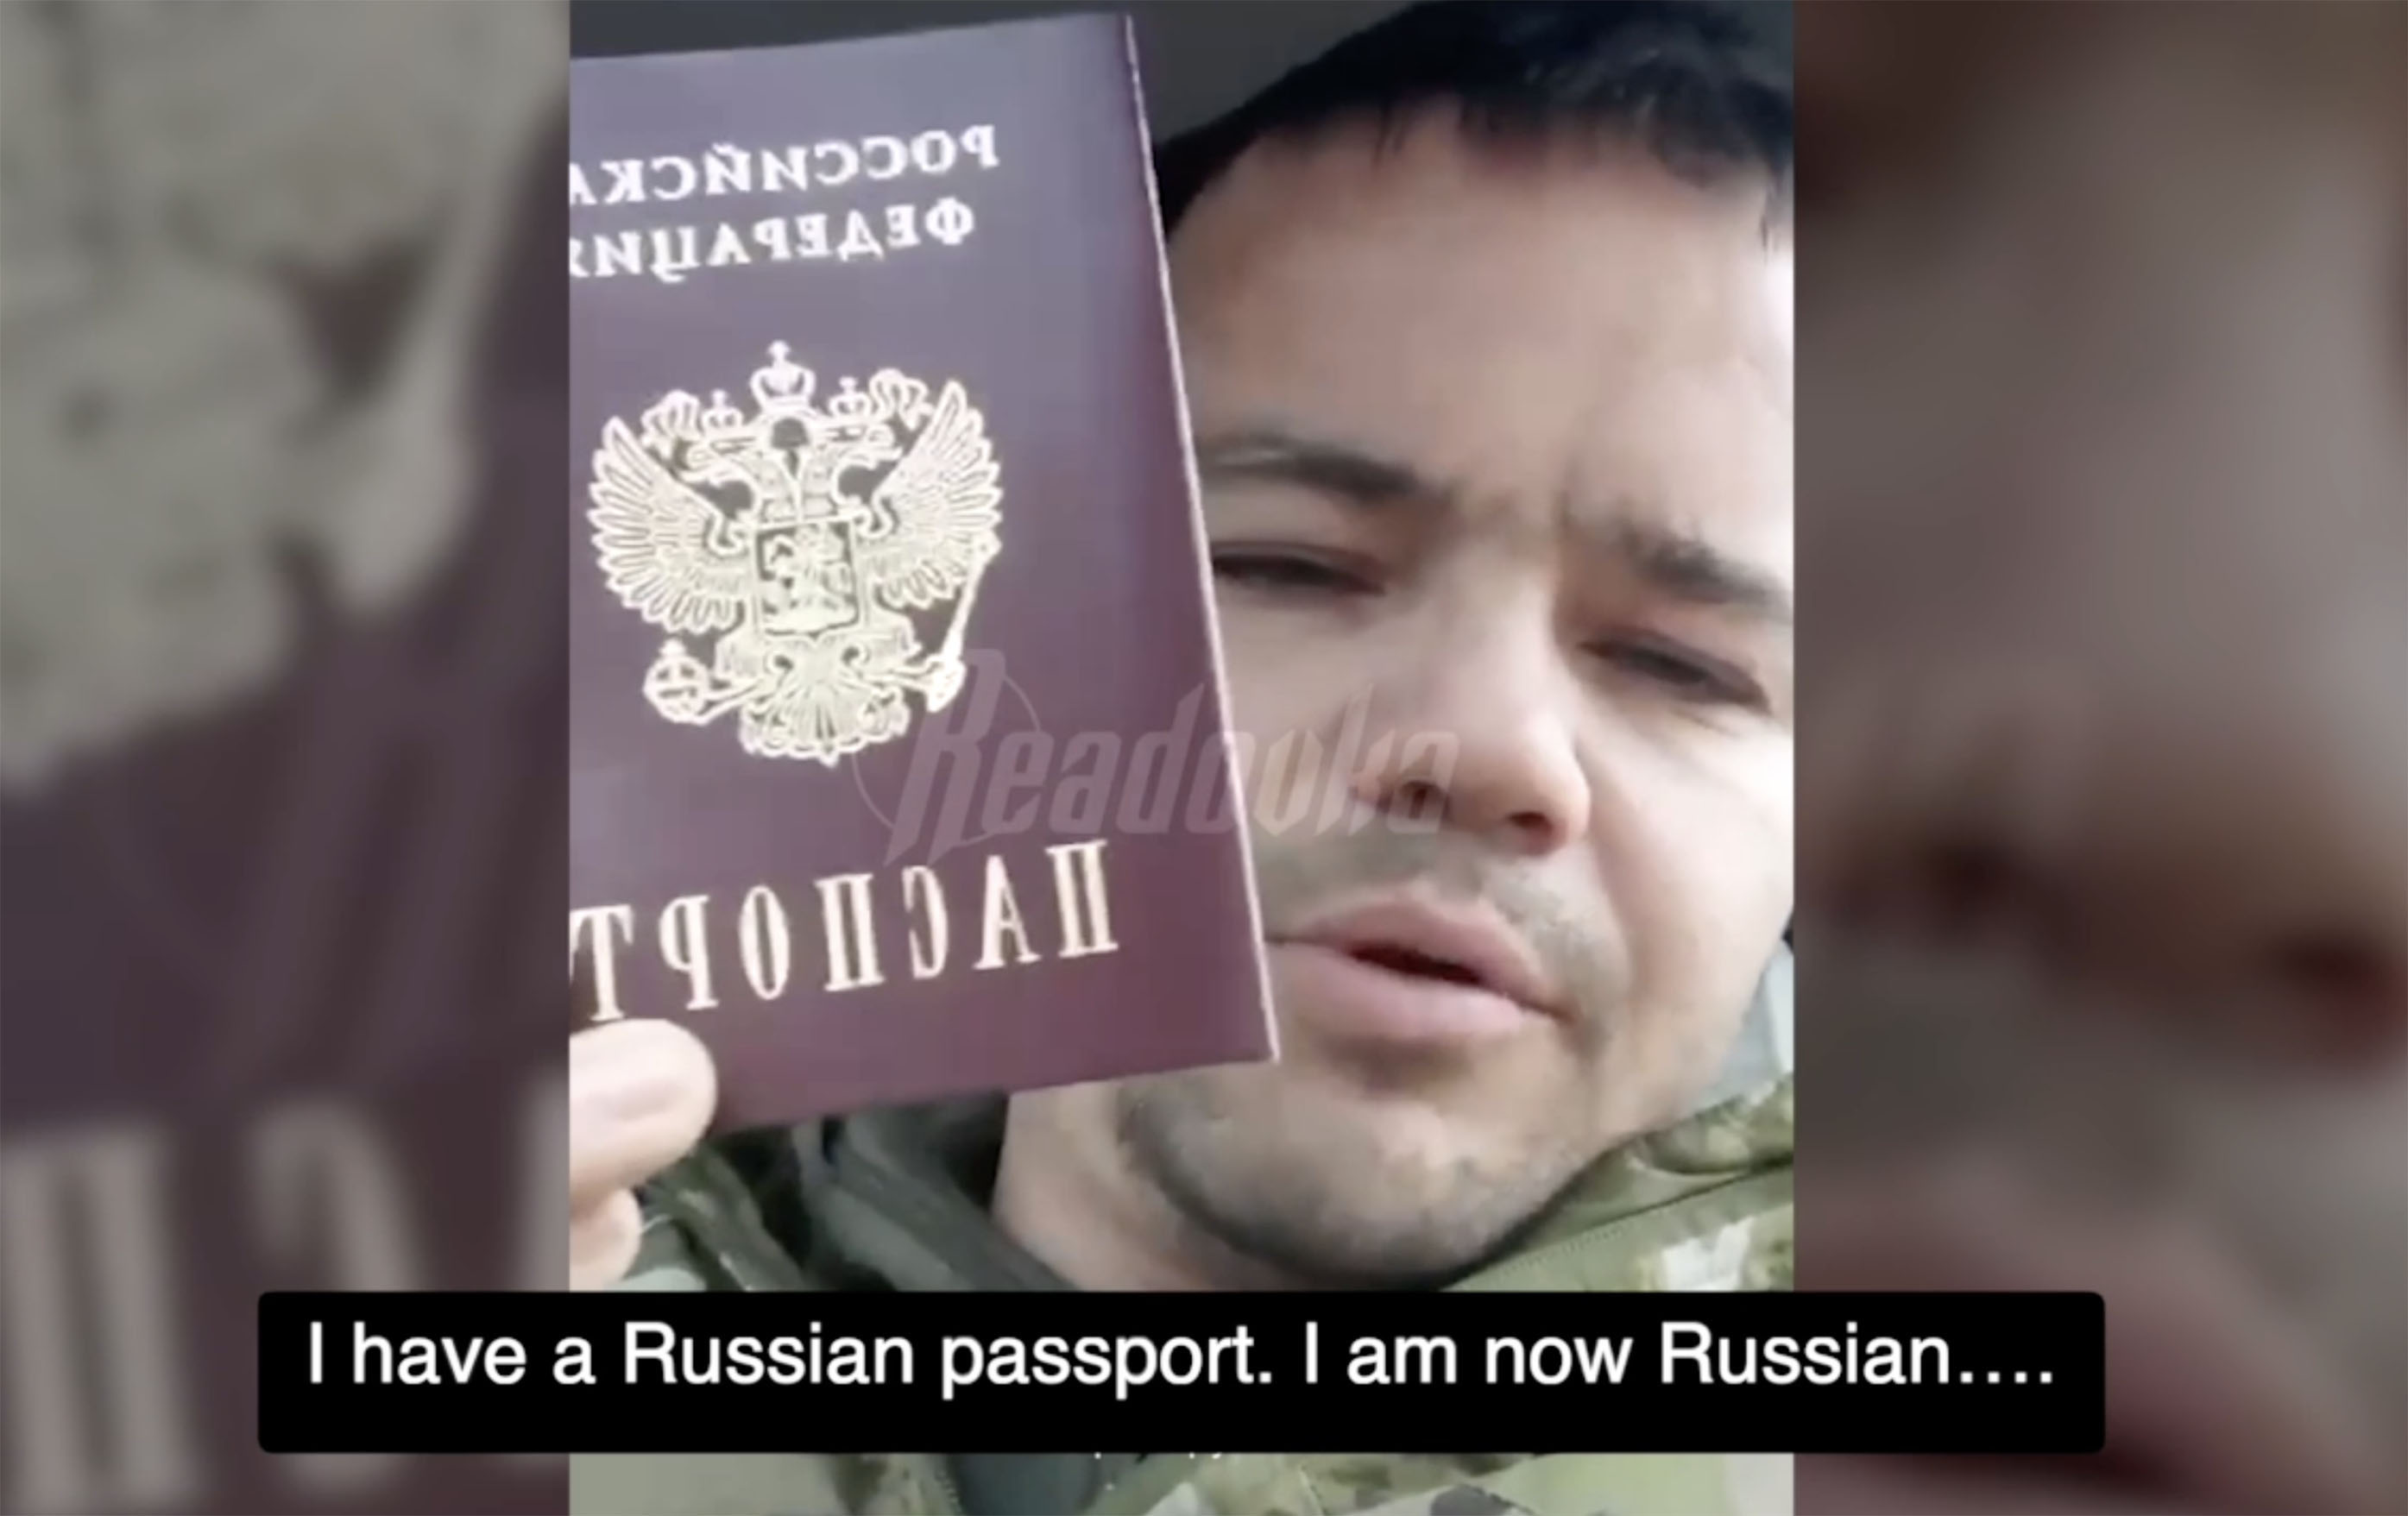 Ein staatlicher russischer Fernsehsender half dabei, die verdrehten Aufnahmen zu machen, in denen er mit seiner neuen Staatsbürgerschaft prahlt